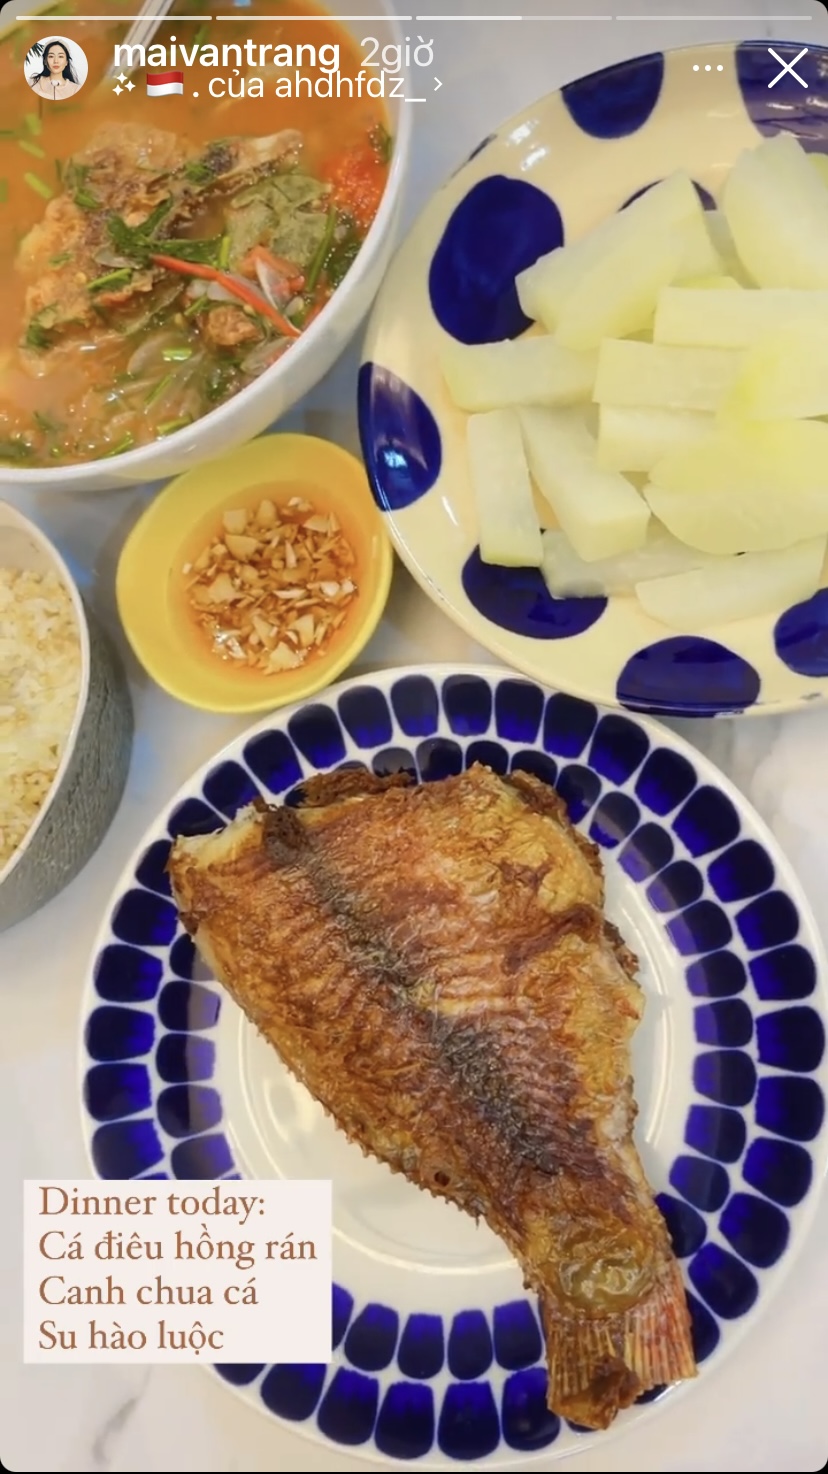 Menu bữa tối nhà beauty blogger này có cá điêu hồng rán, canh chua cá và su hào luộc.